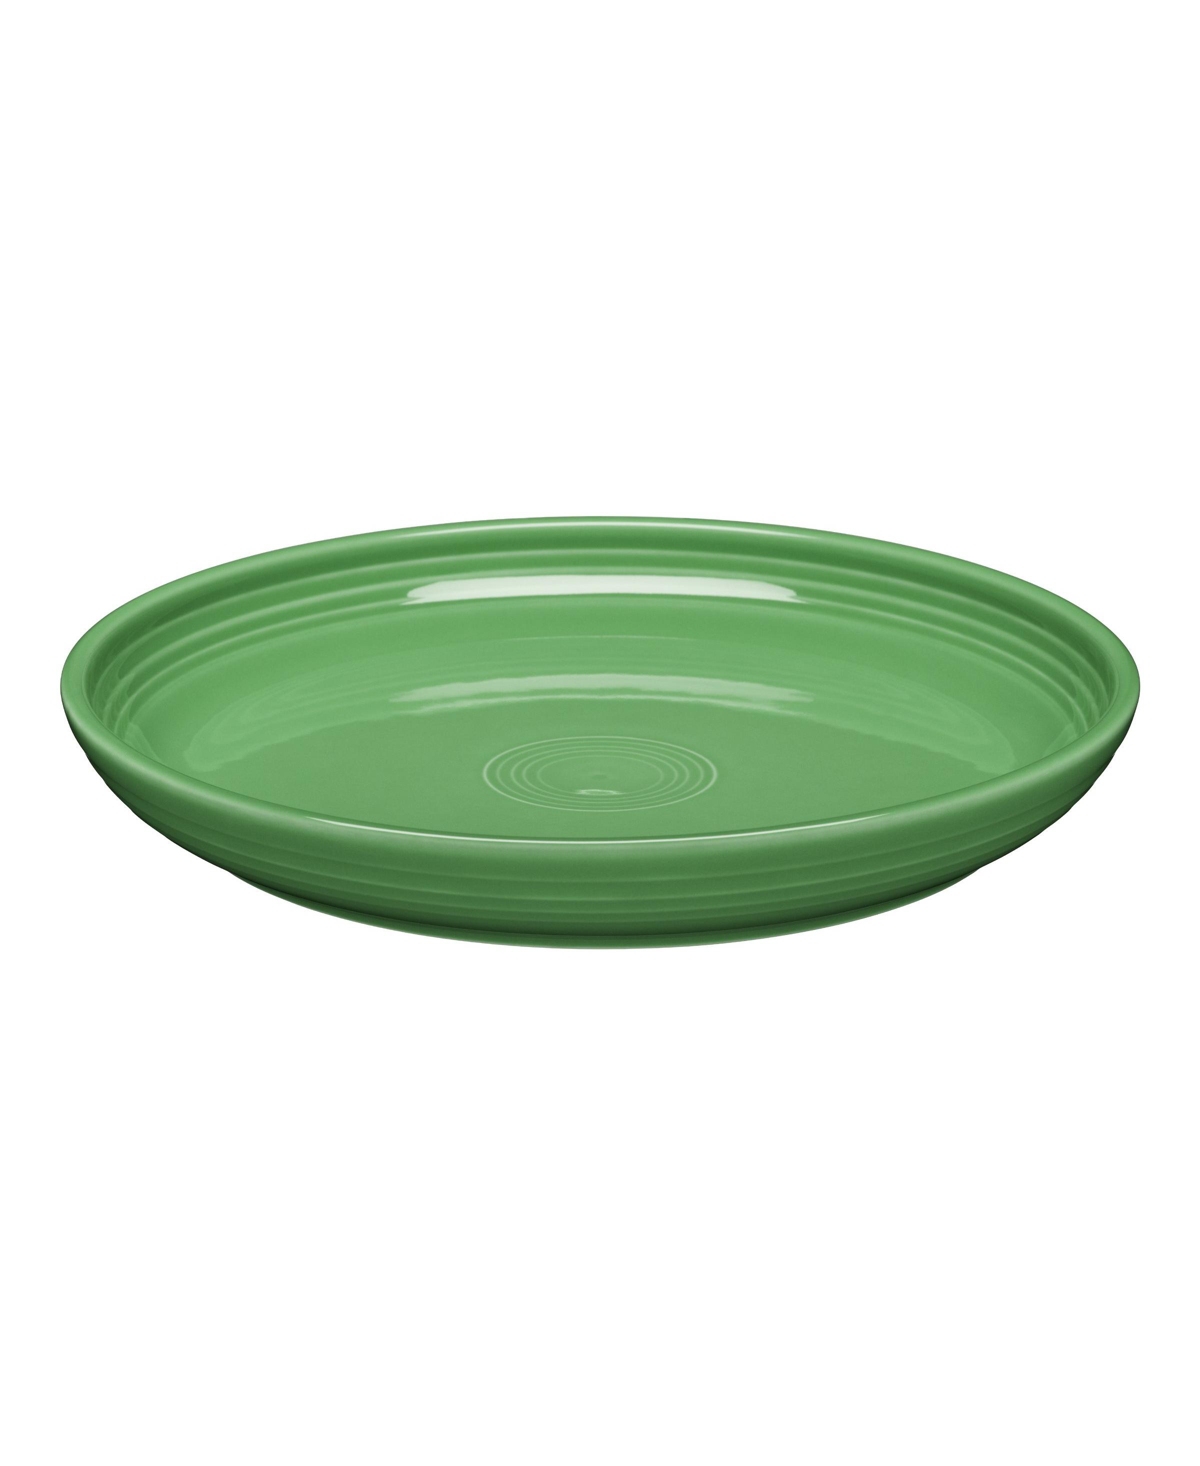 Dinner Bowl - Fiesta Jade